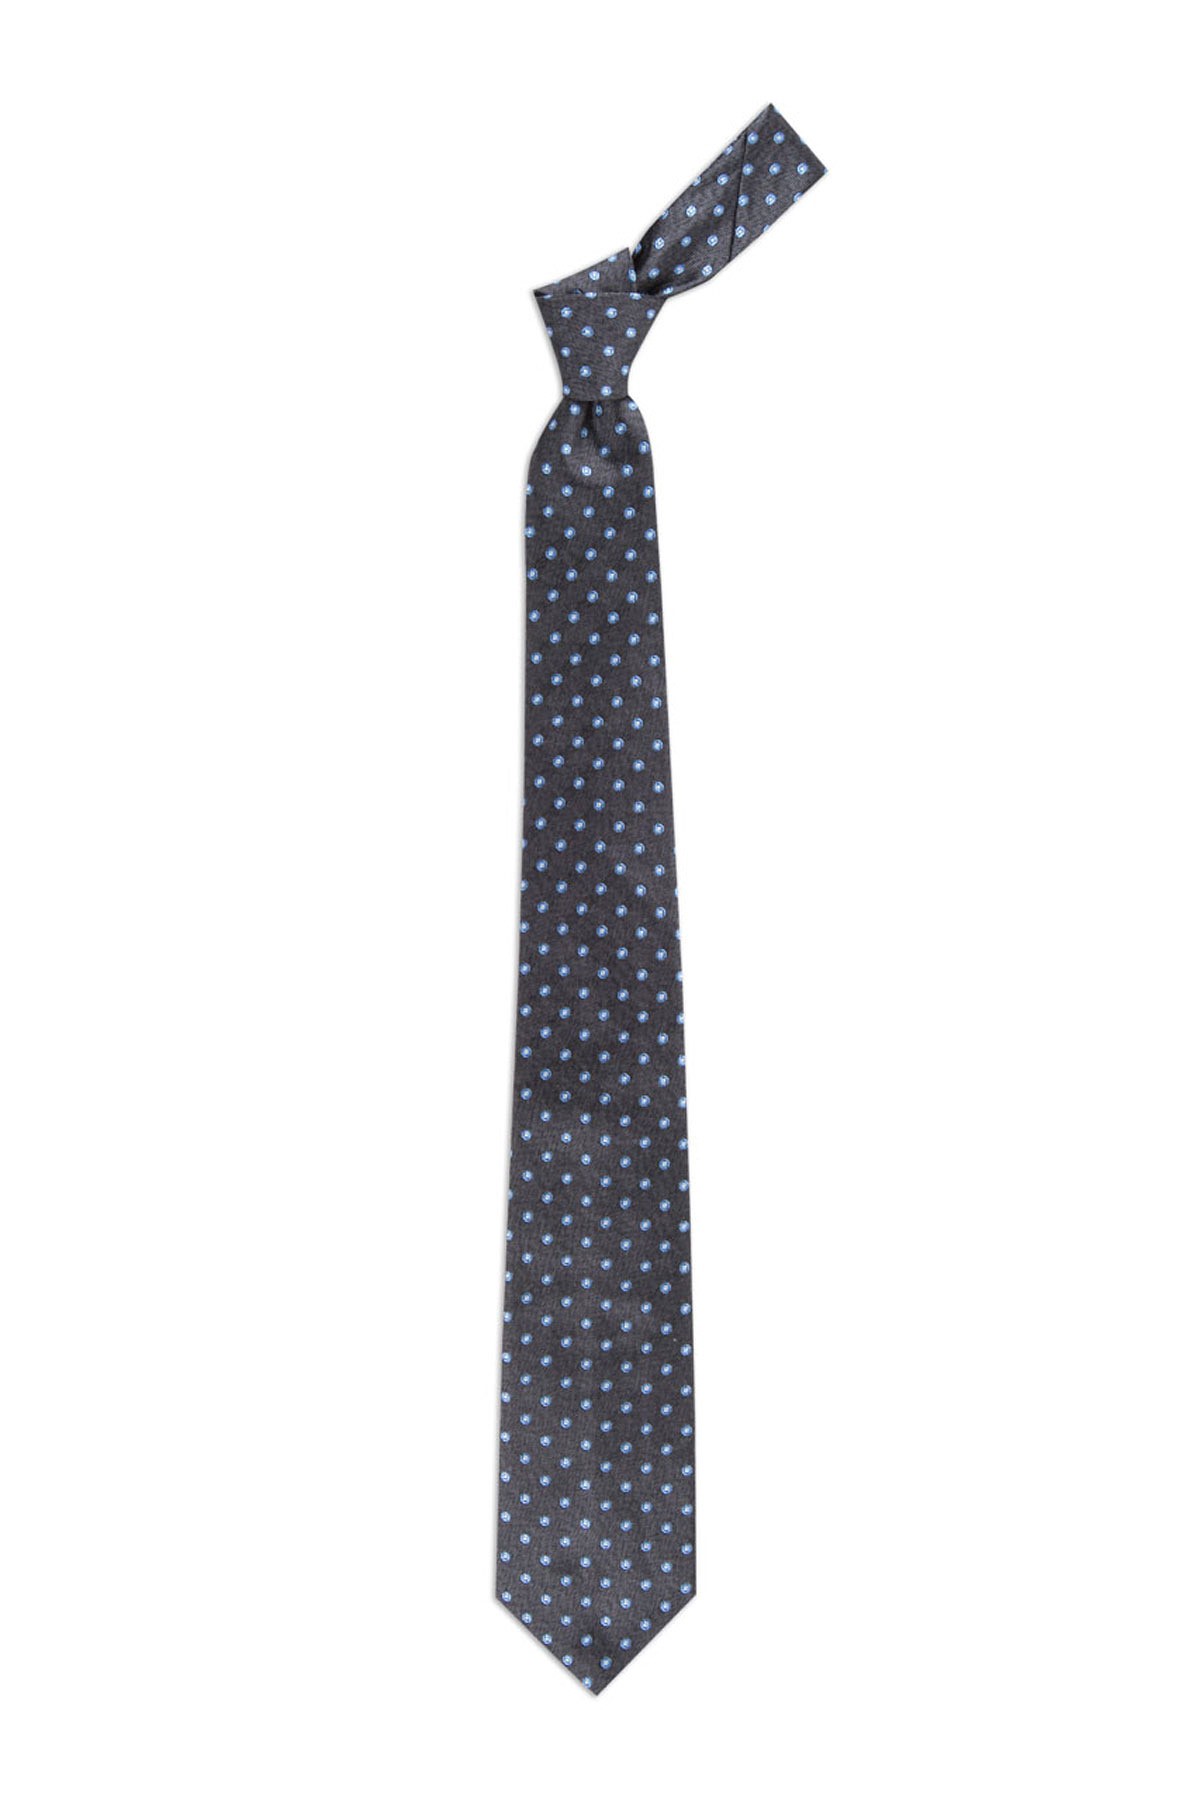 Desenli 8 cm genişliğinde yün ipek karışımlı kravat - Koyu gri